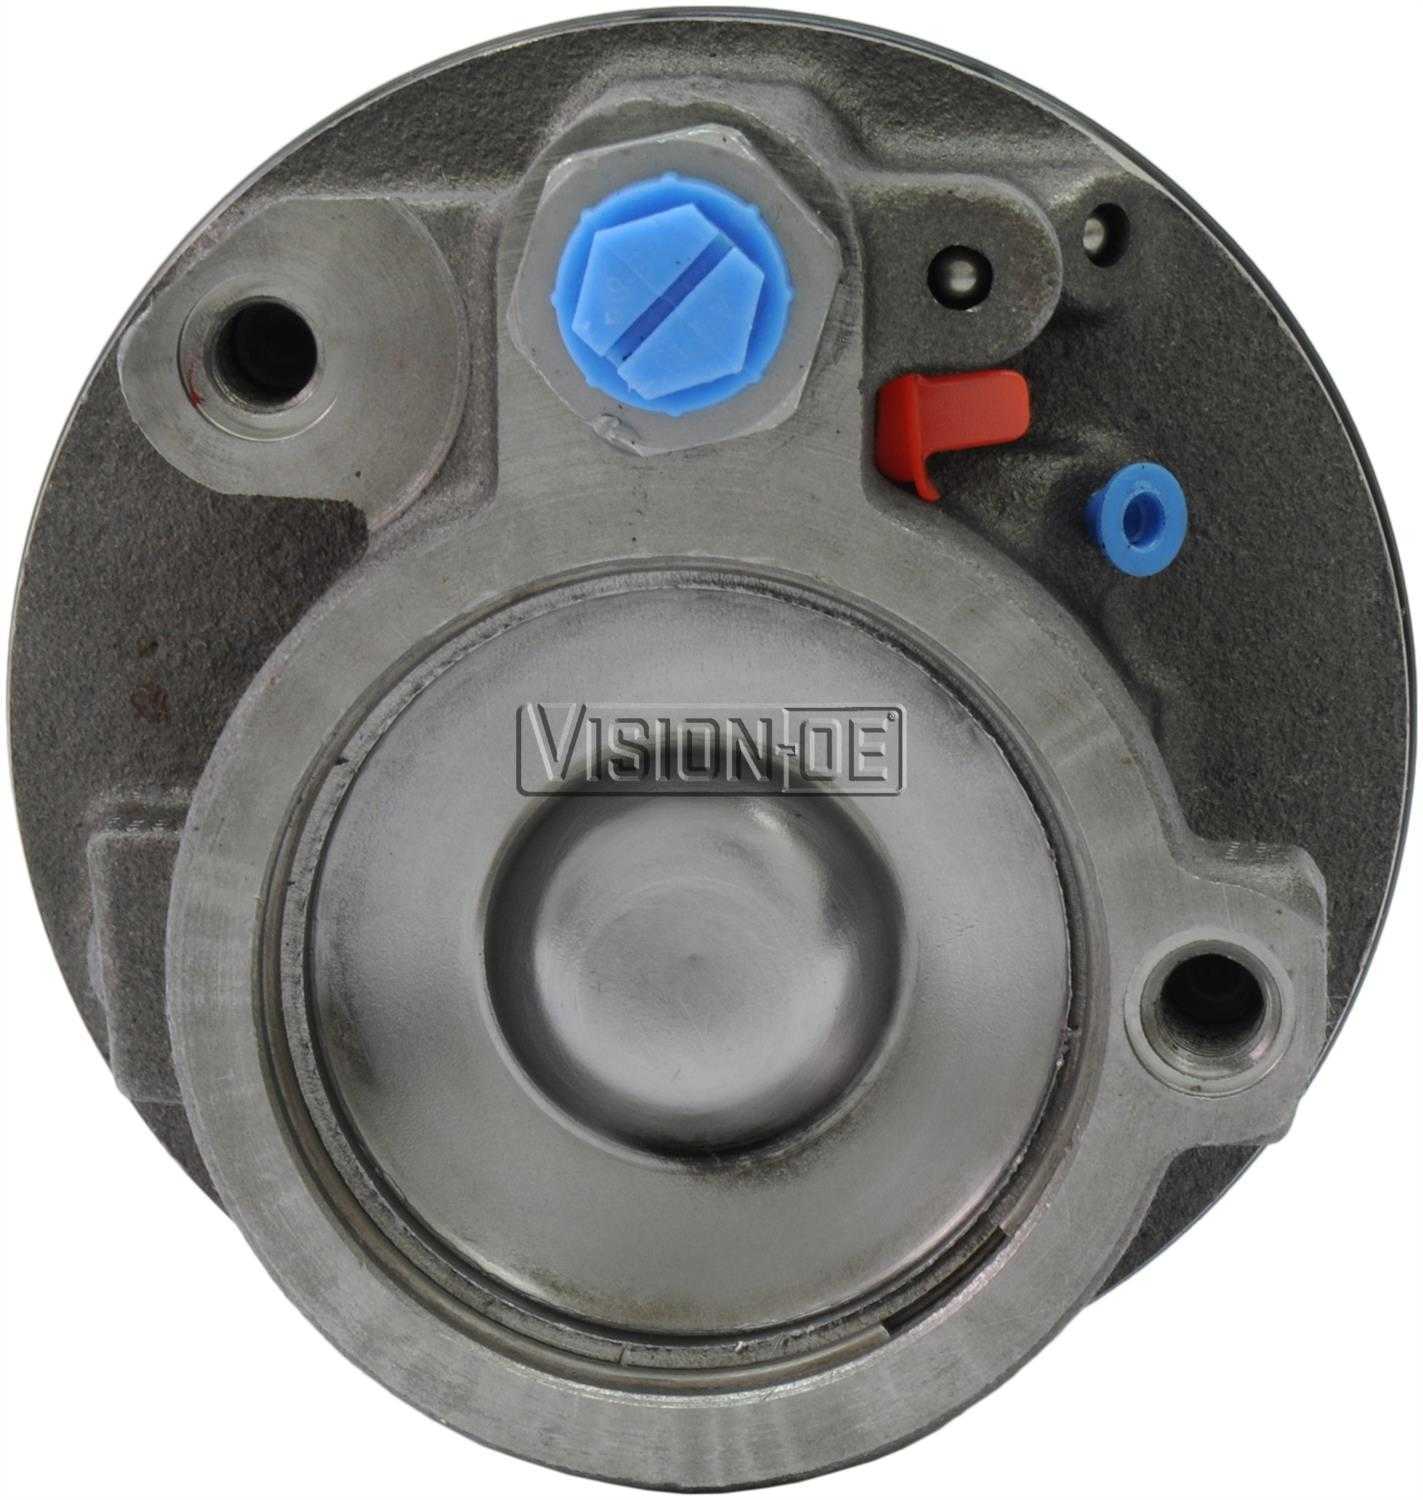 VISION-OE - Reman Power Steering Pump - VOE 731-0108